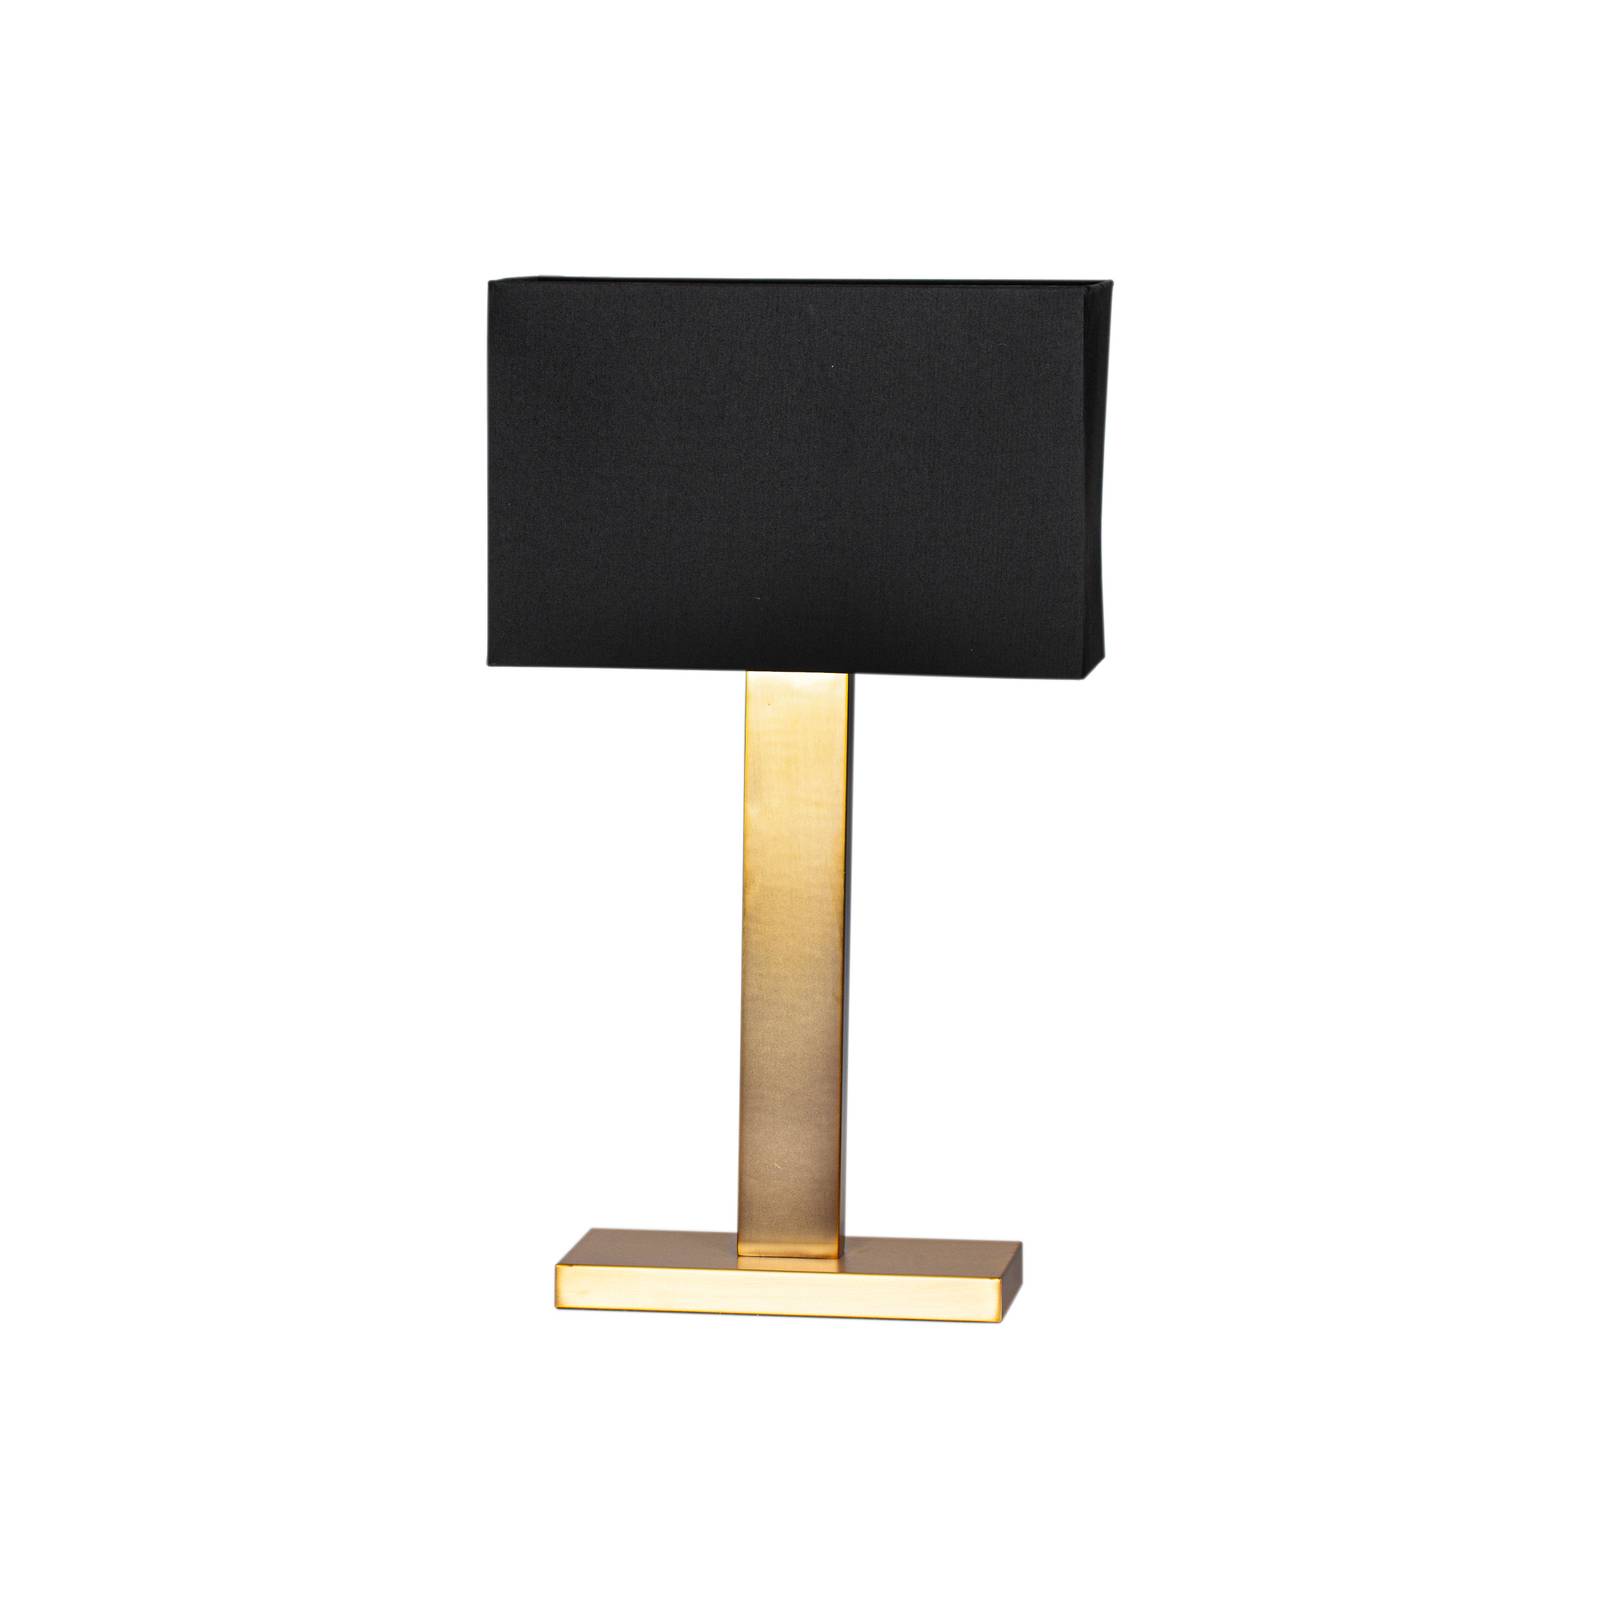 By Rydéns Prime bordslampa höjd 69 cm guld/svart